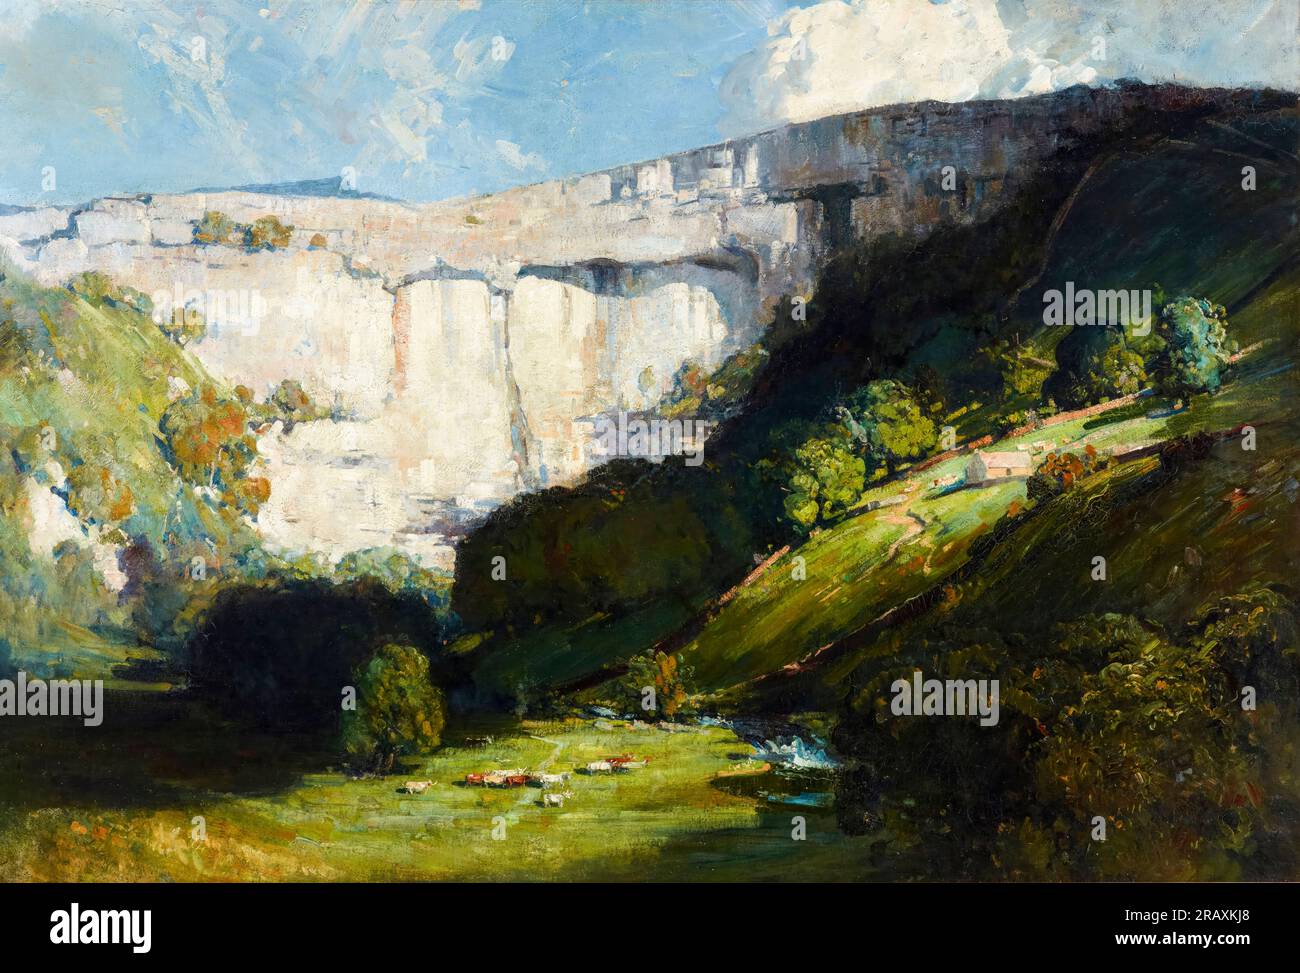 Malham Cove, peinture de paysage à l'huile sur toile par Arthur Streeton, vers 1911 Banque D'Images